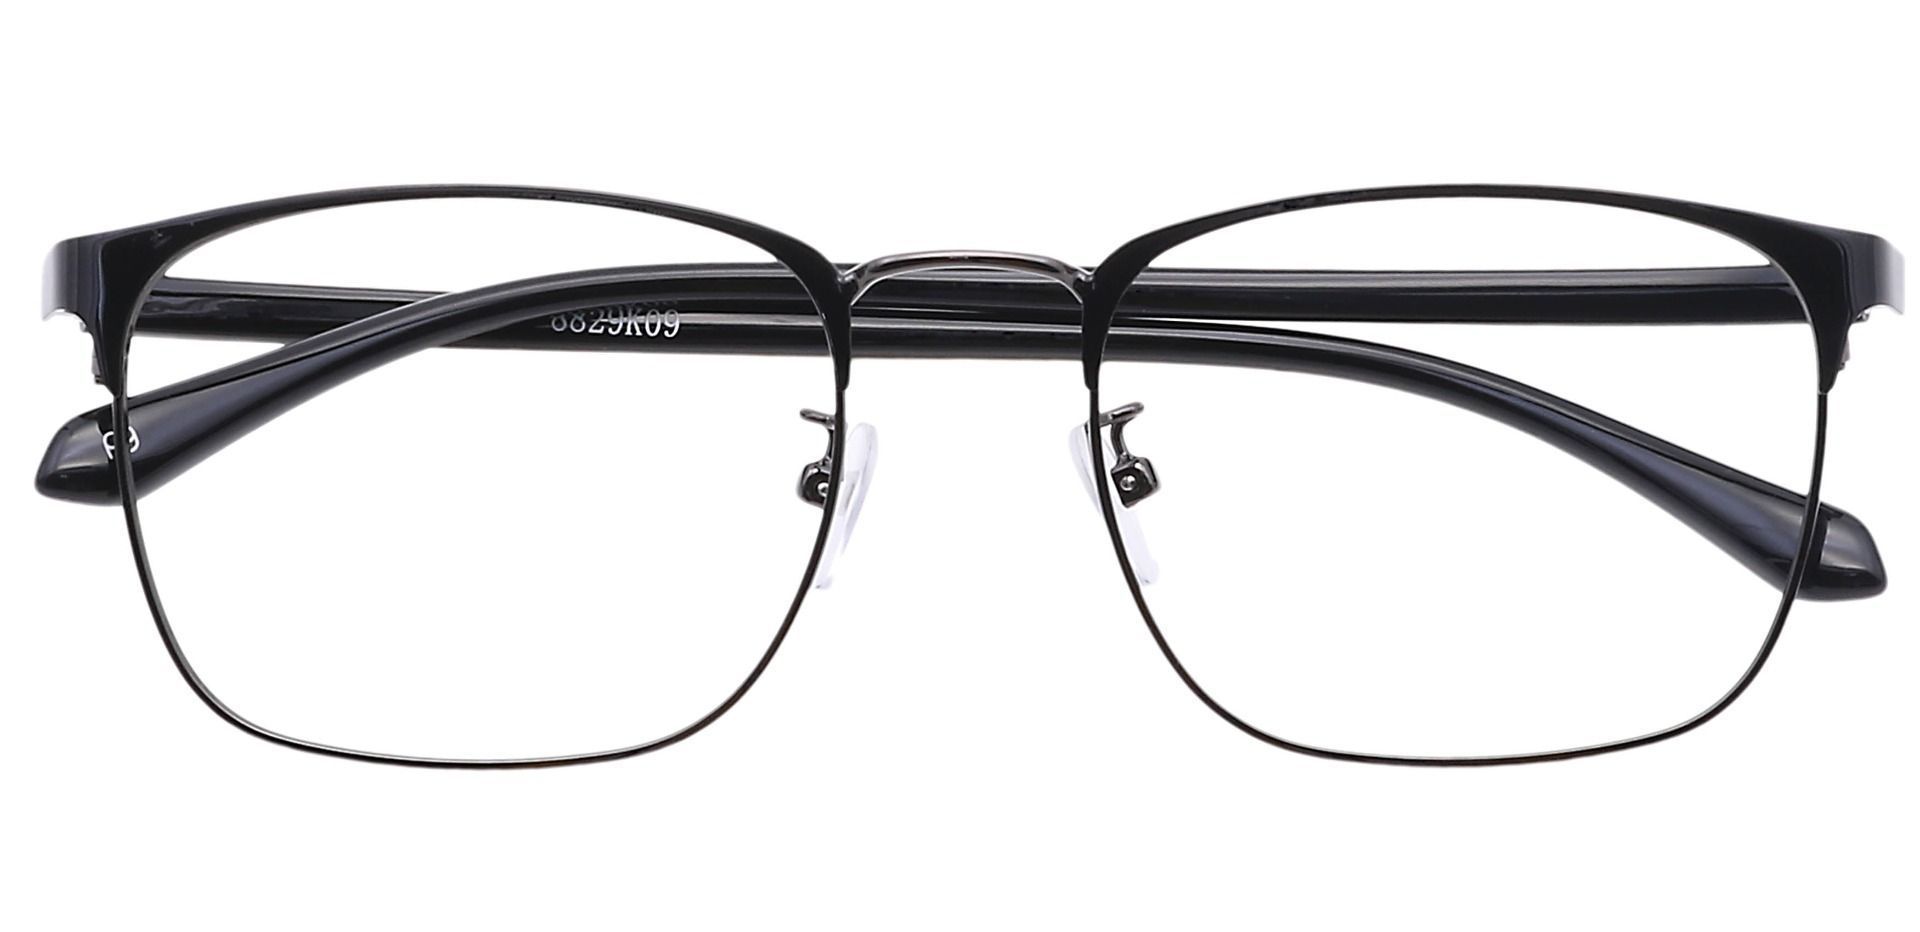 Valdez Browline Lined Bifocal Glasses - Black